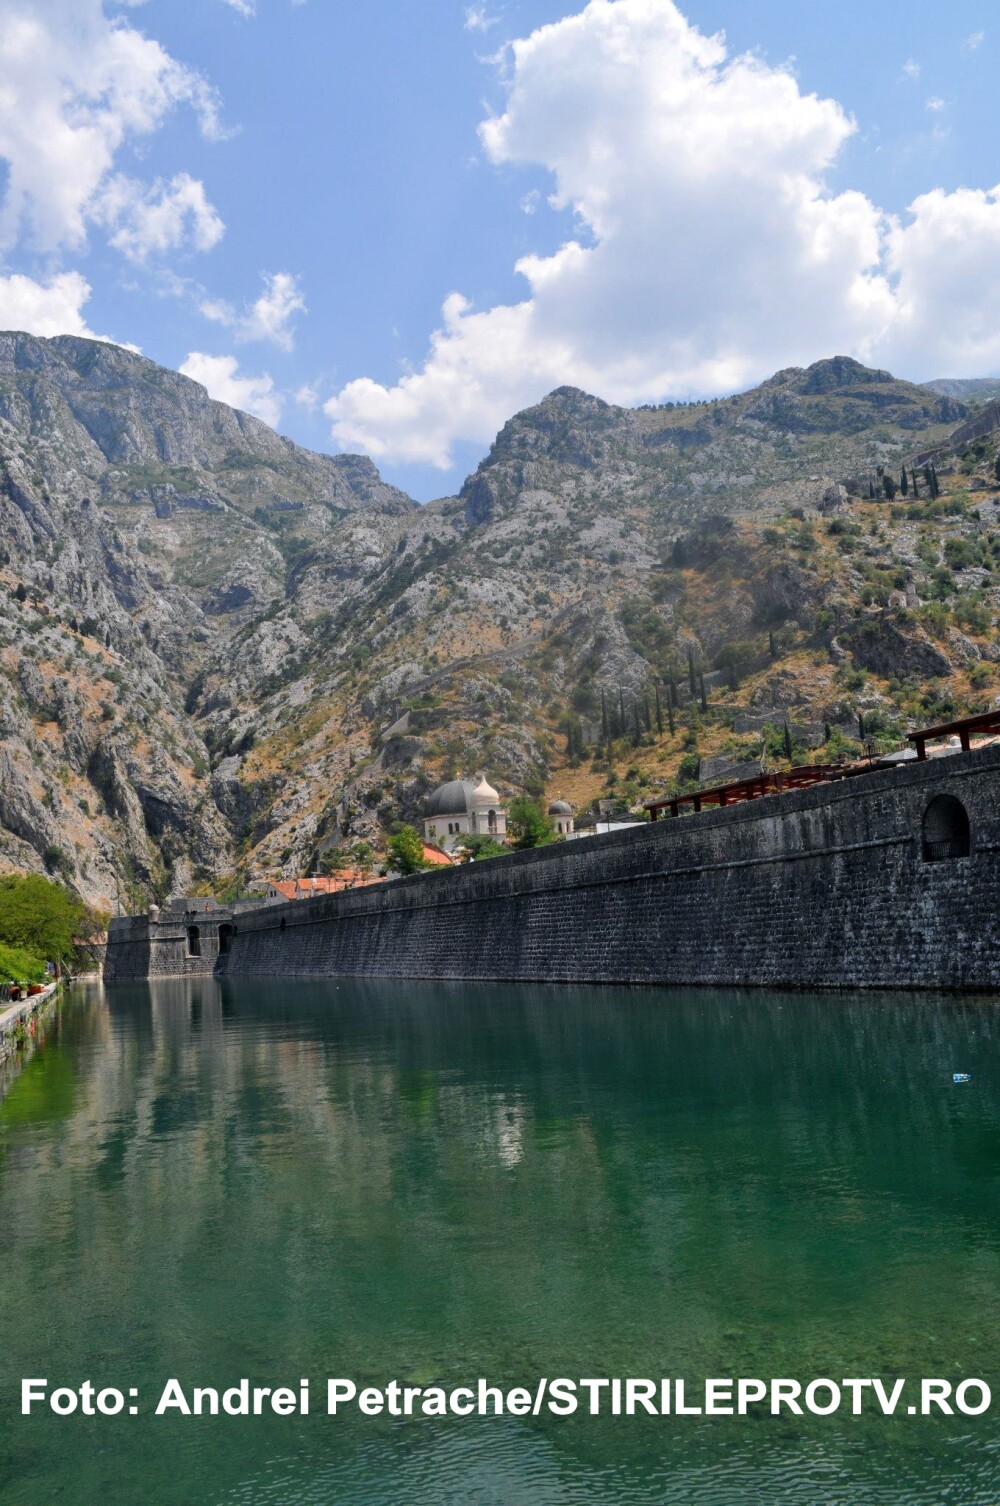 Turism pe serpentine si prapastii adanci. Cum arata un traseu montan in Muntenegru. GALERIE FOTO - Imaginea 14